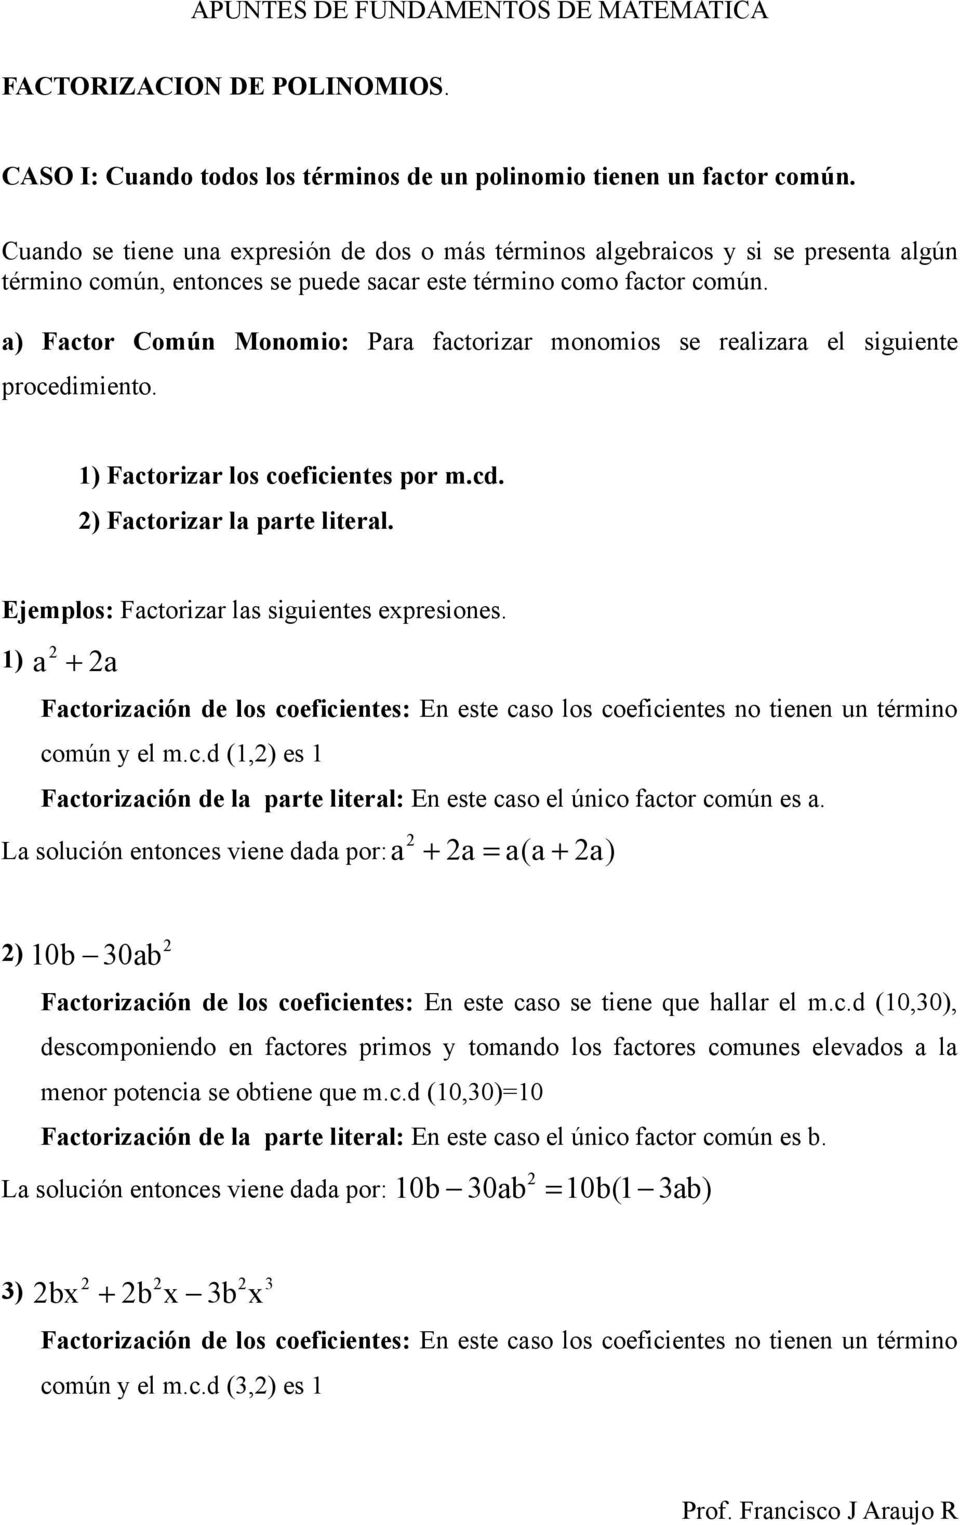 a) Factor Común Monomio: Para factorizar monomios se realizara el siguiente procedimiento. 1) Factorizar los coeficientes por m.cd. ) Factorizar la parte literal.